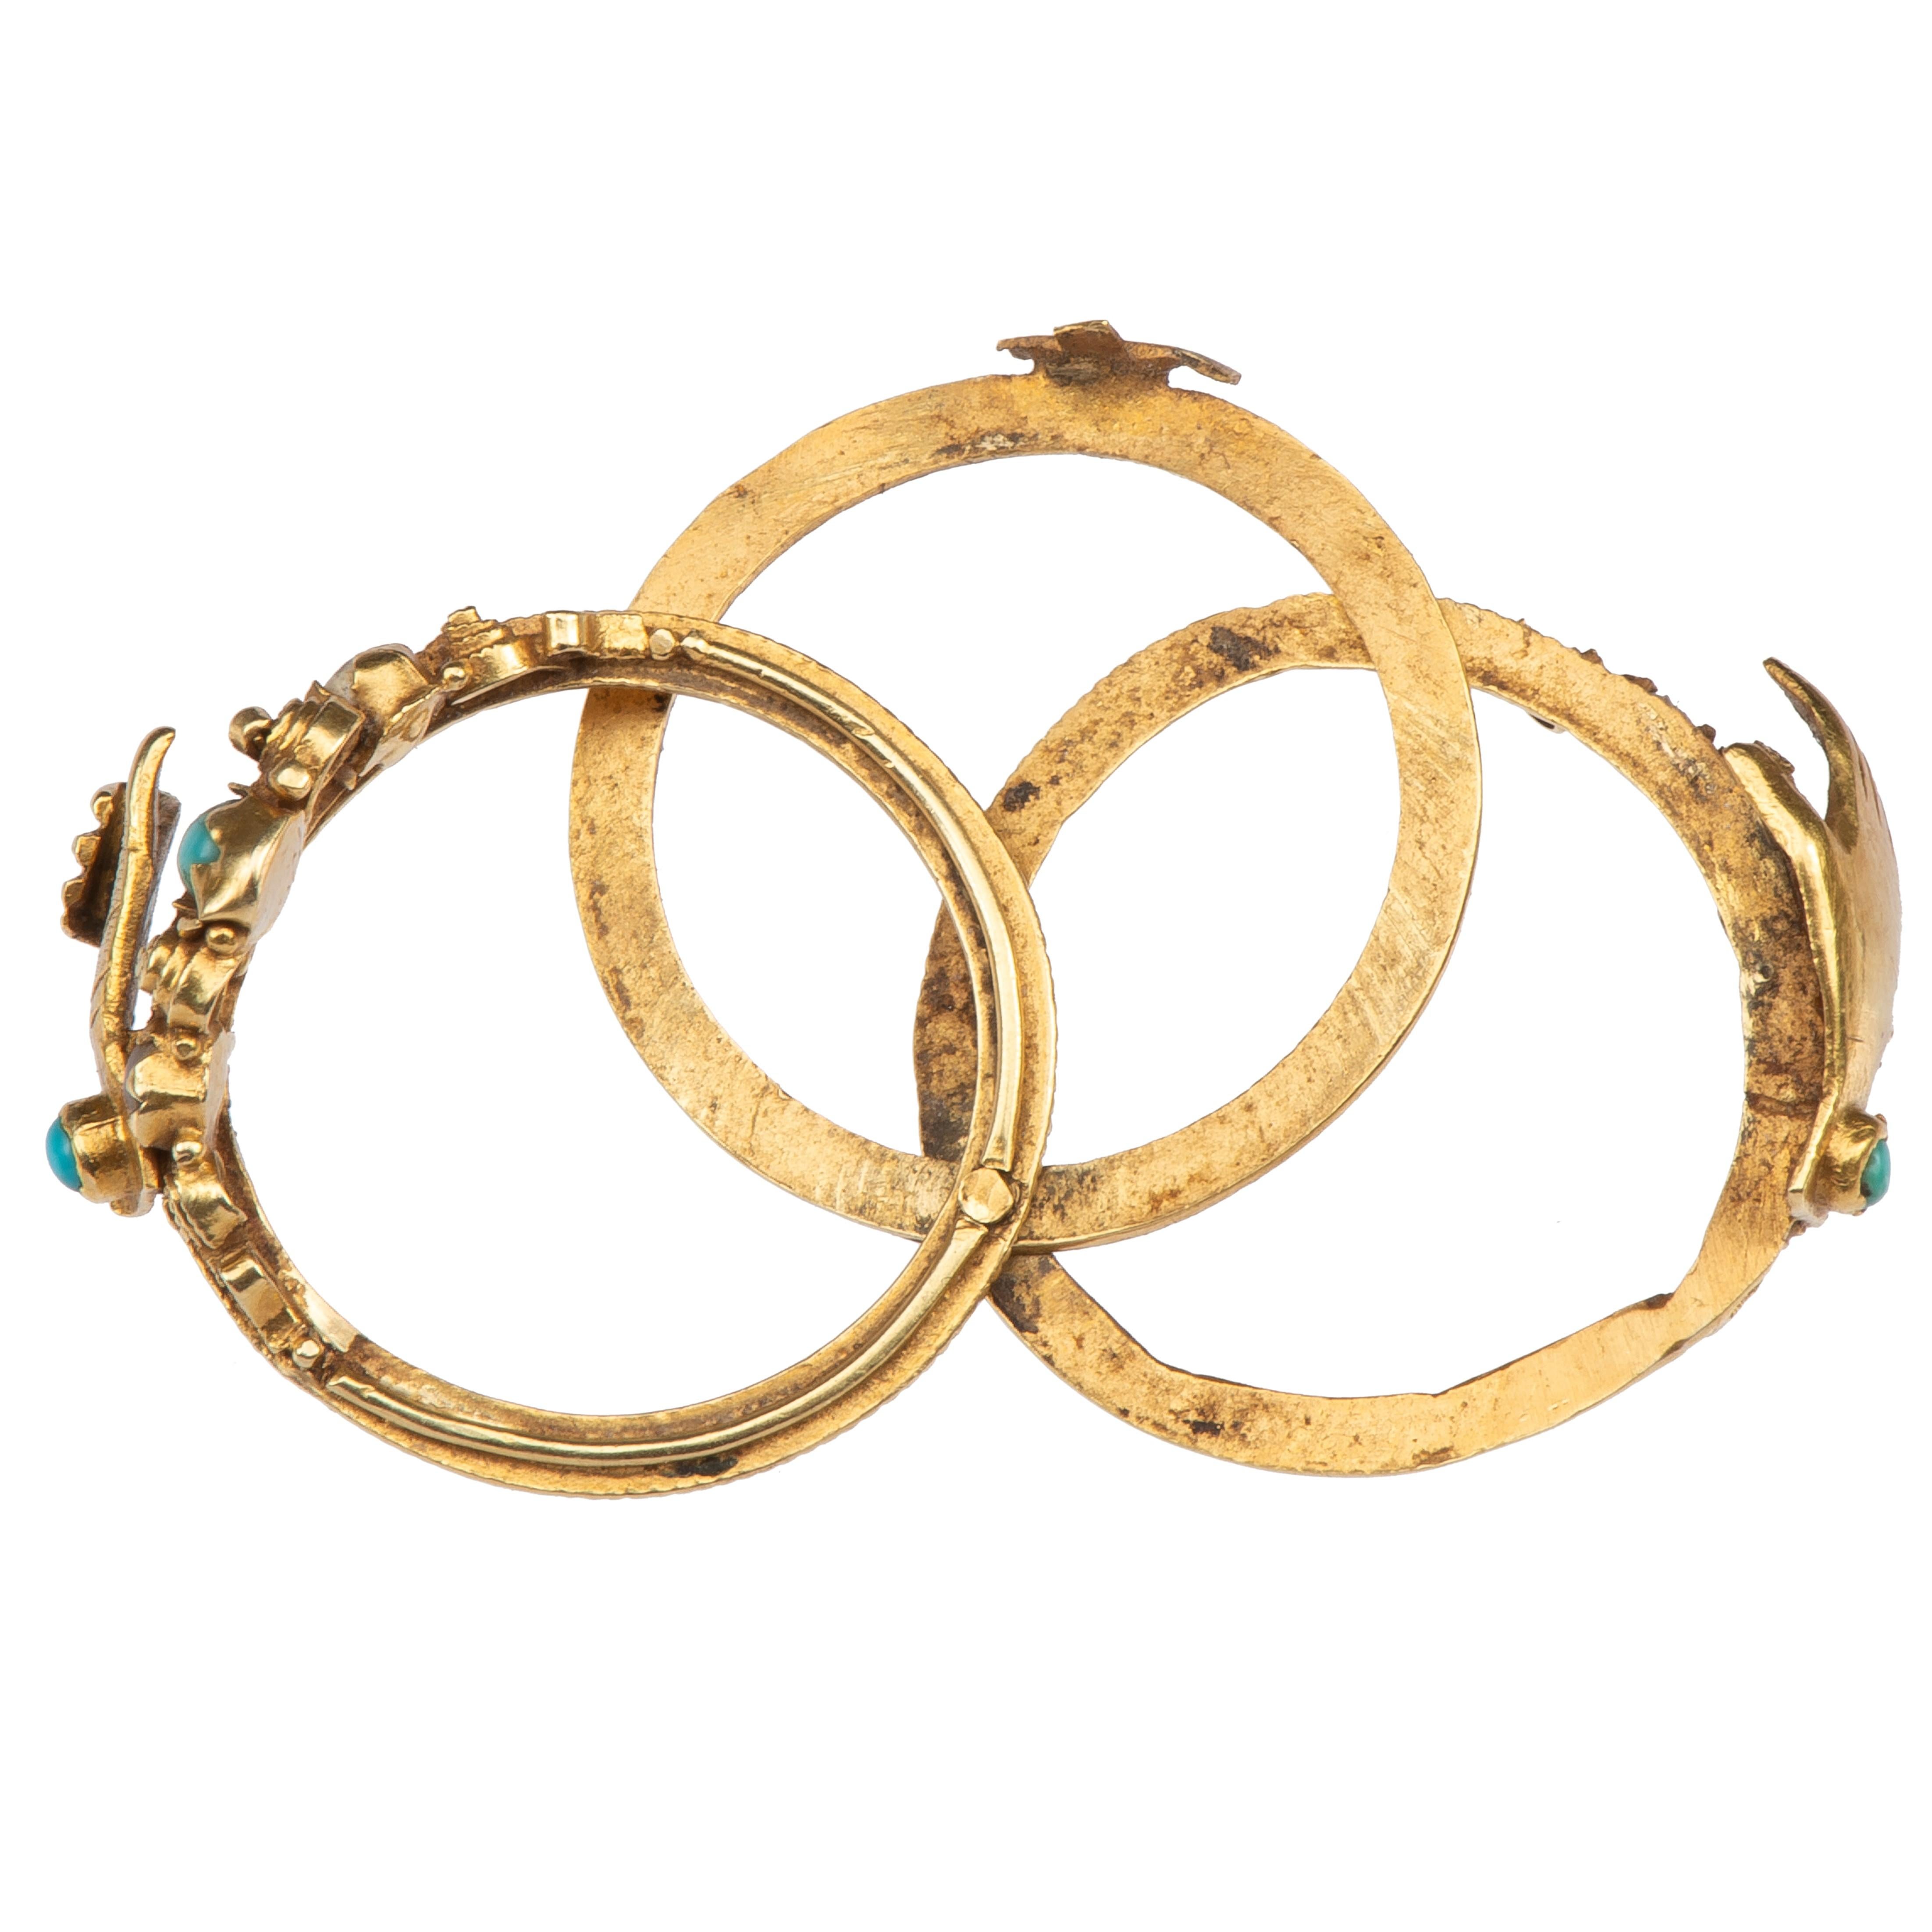 Antique Gold Fede Gimmel Ring 1